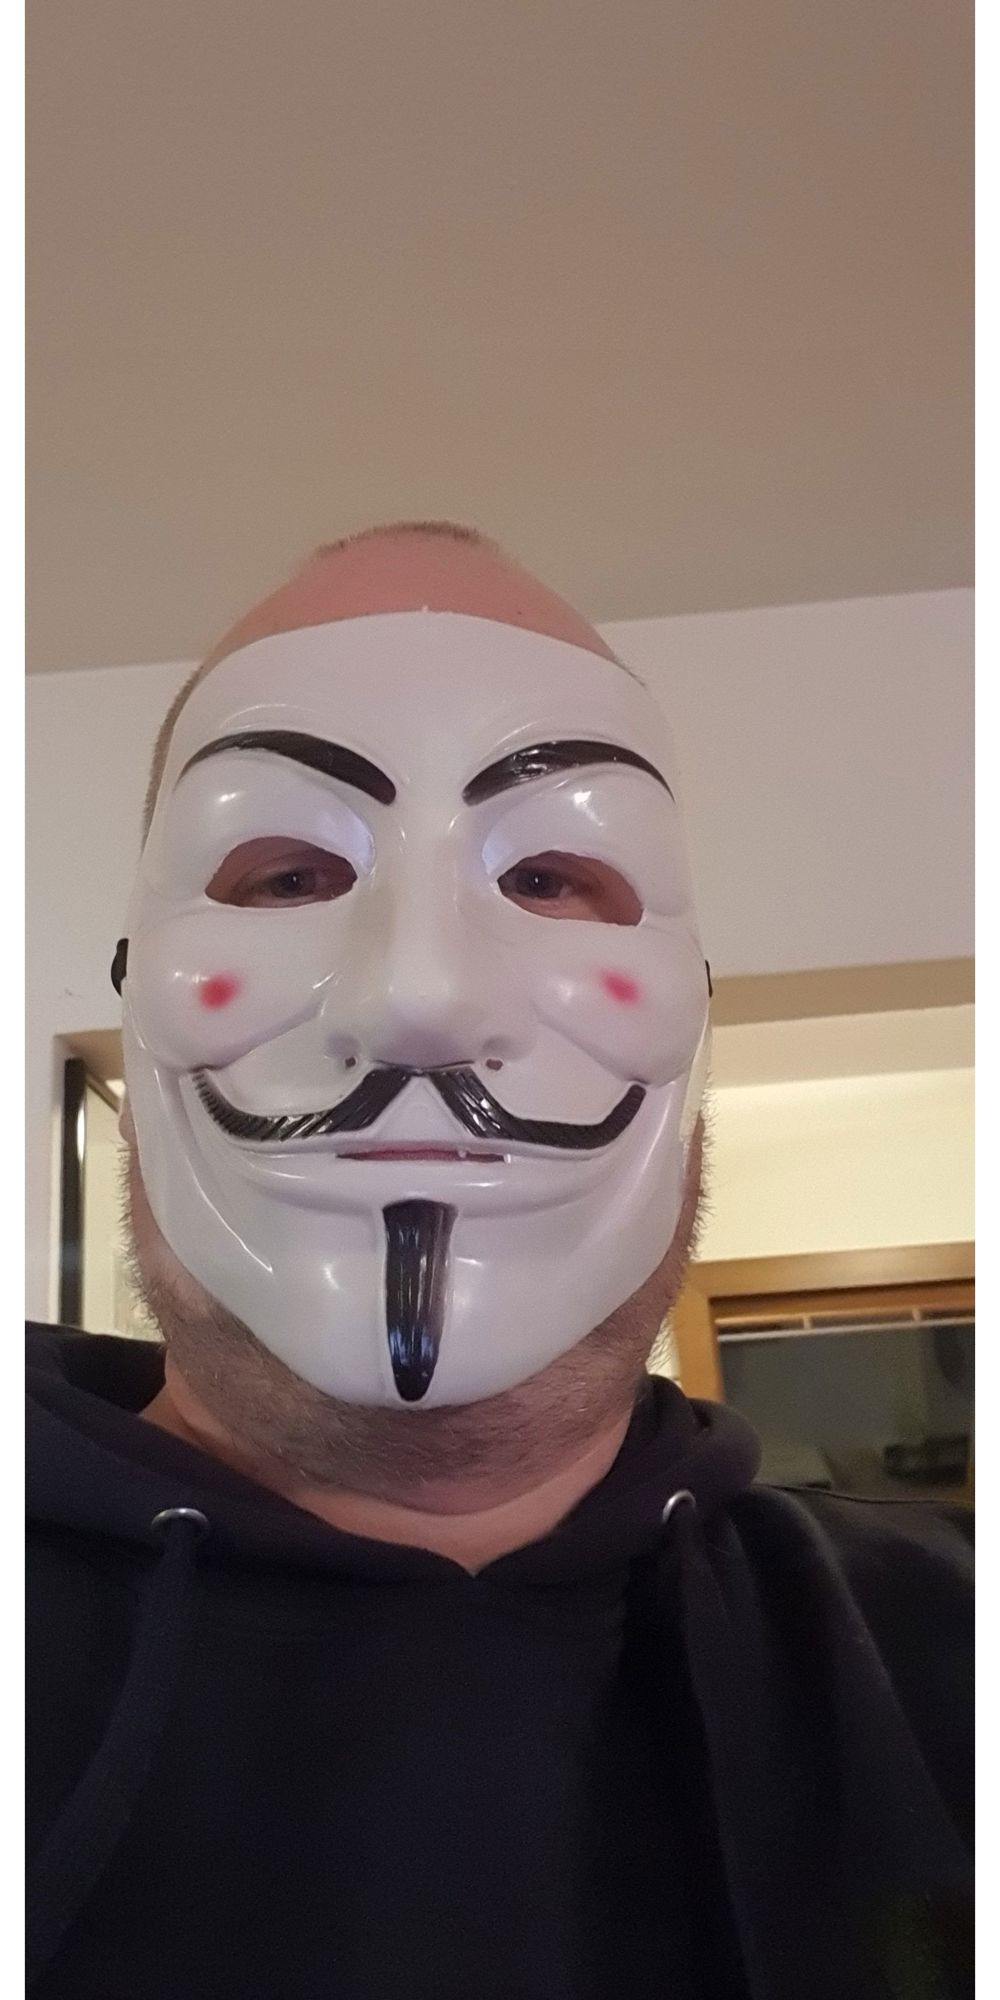 Blase dich ab du anonym Maske auf